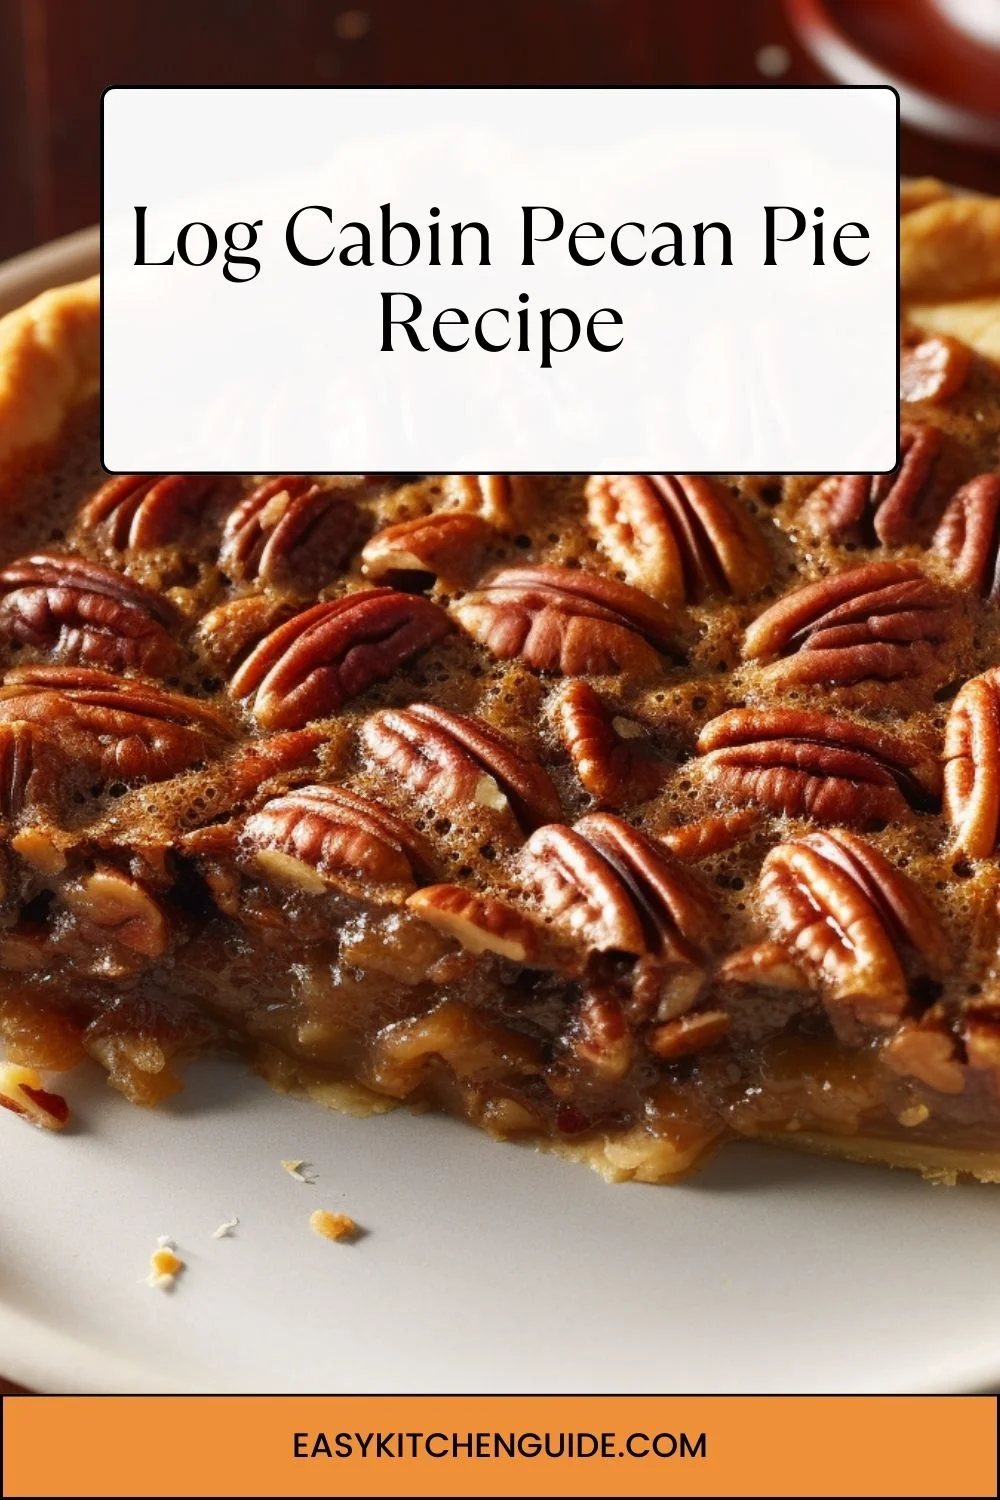 Log Cabin Pecan Pie Recipe